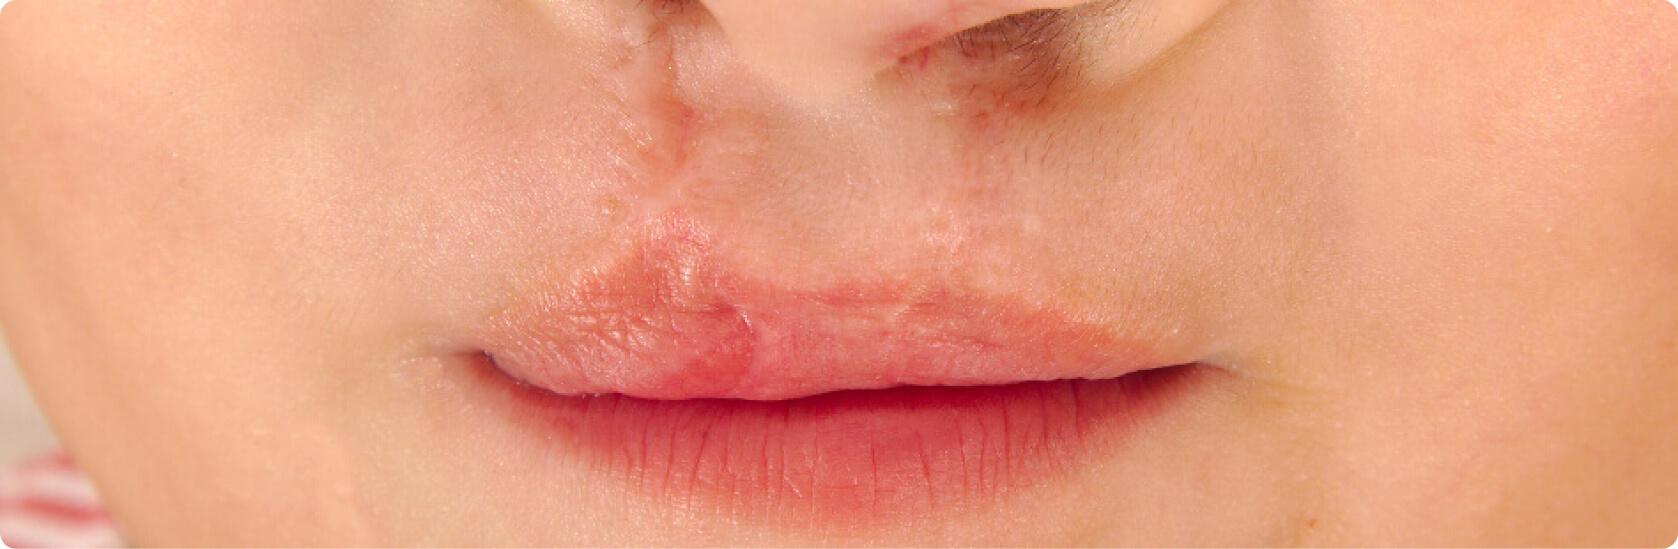 Lippen-Kiefer-Gaumenspalte (LKGS, Hasenscharte) - Wie lautet die medizinische Definition einer Lippen-Kiefer-Gaumenspalte?